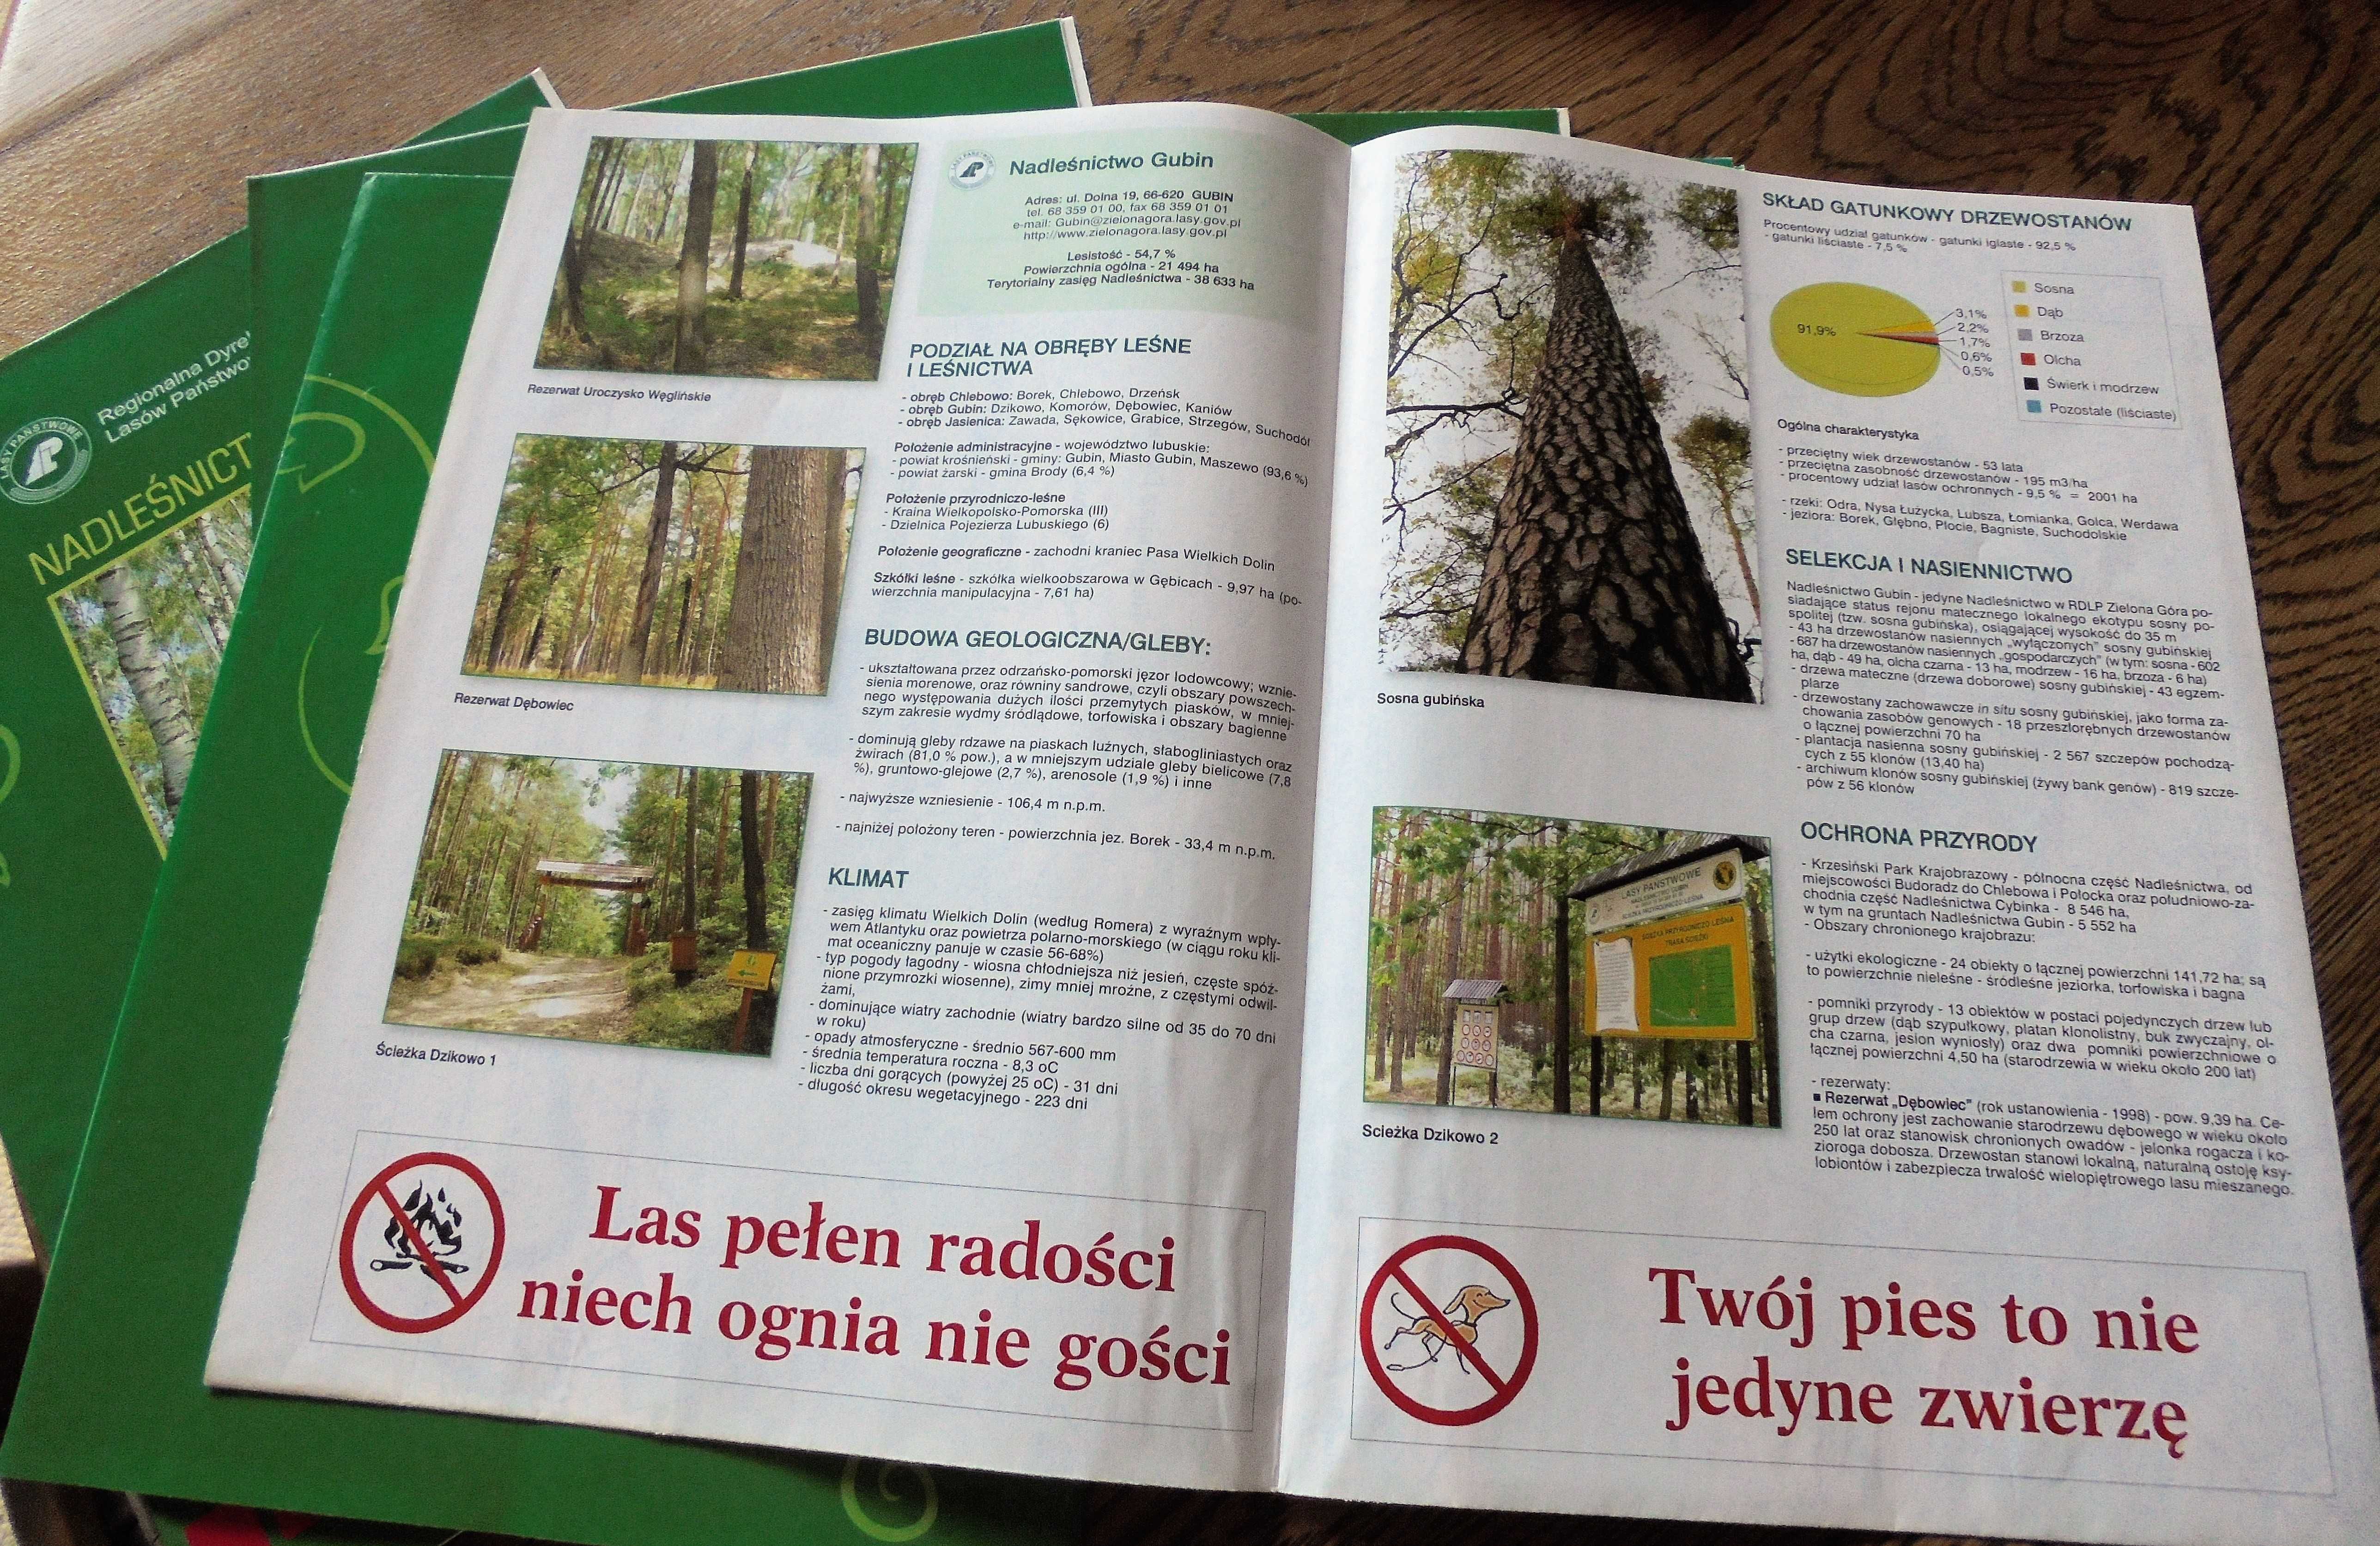 Mapy lasów województwa lubuskiego-43 nadleśnictwa